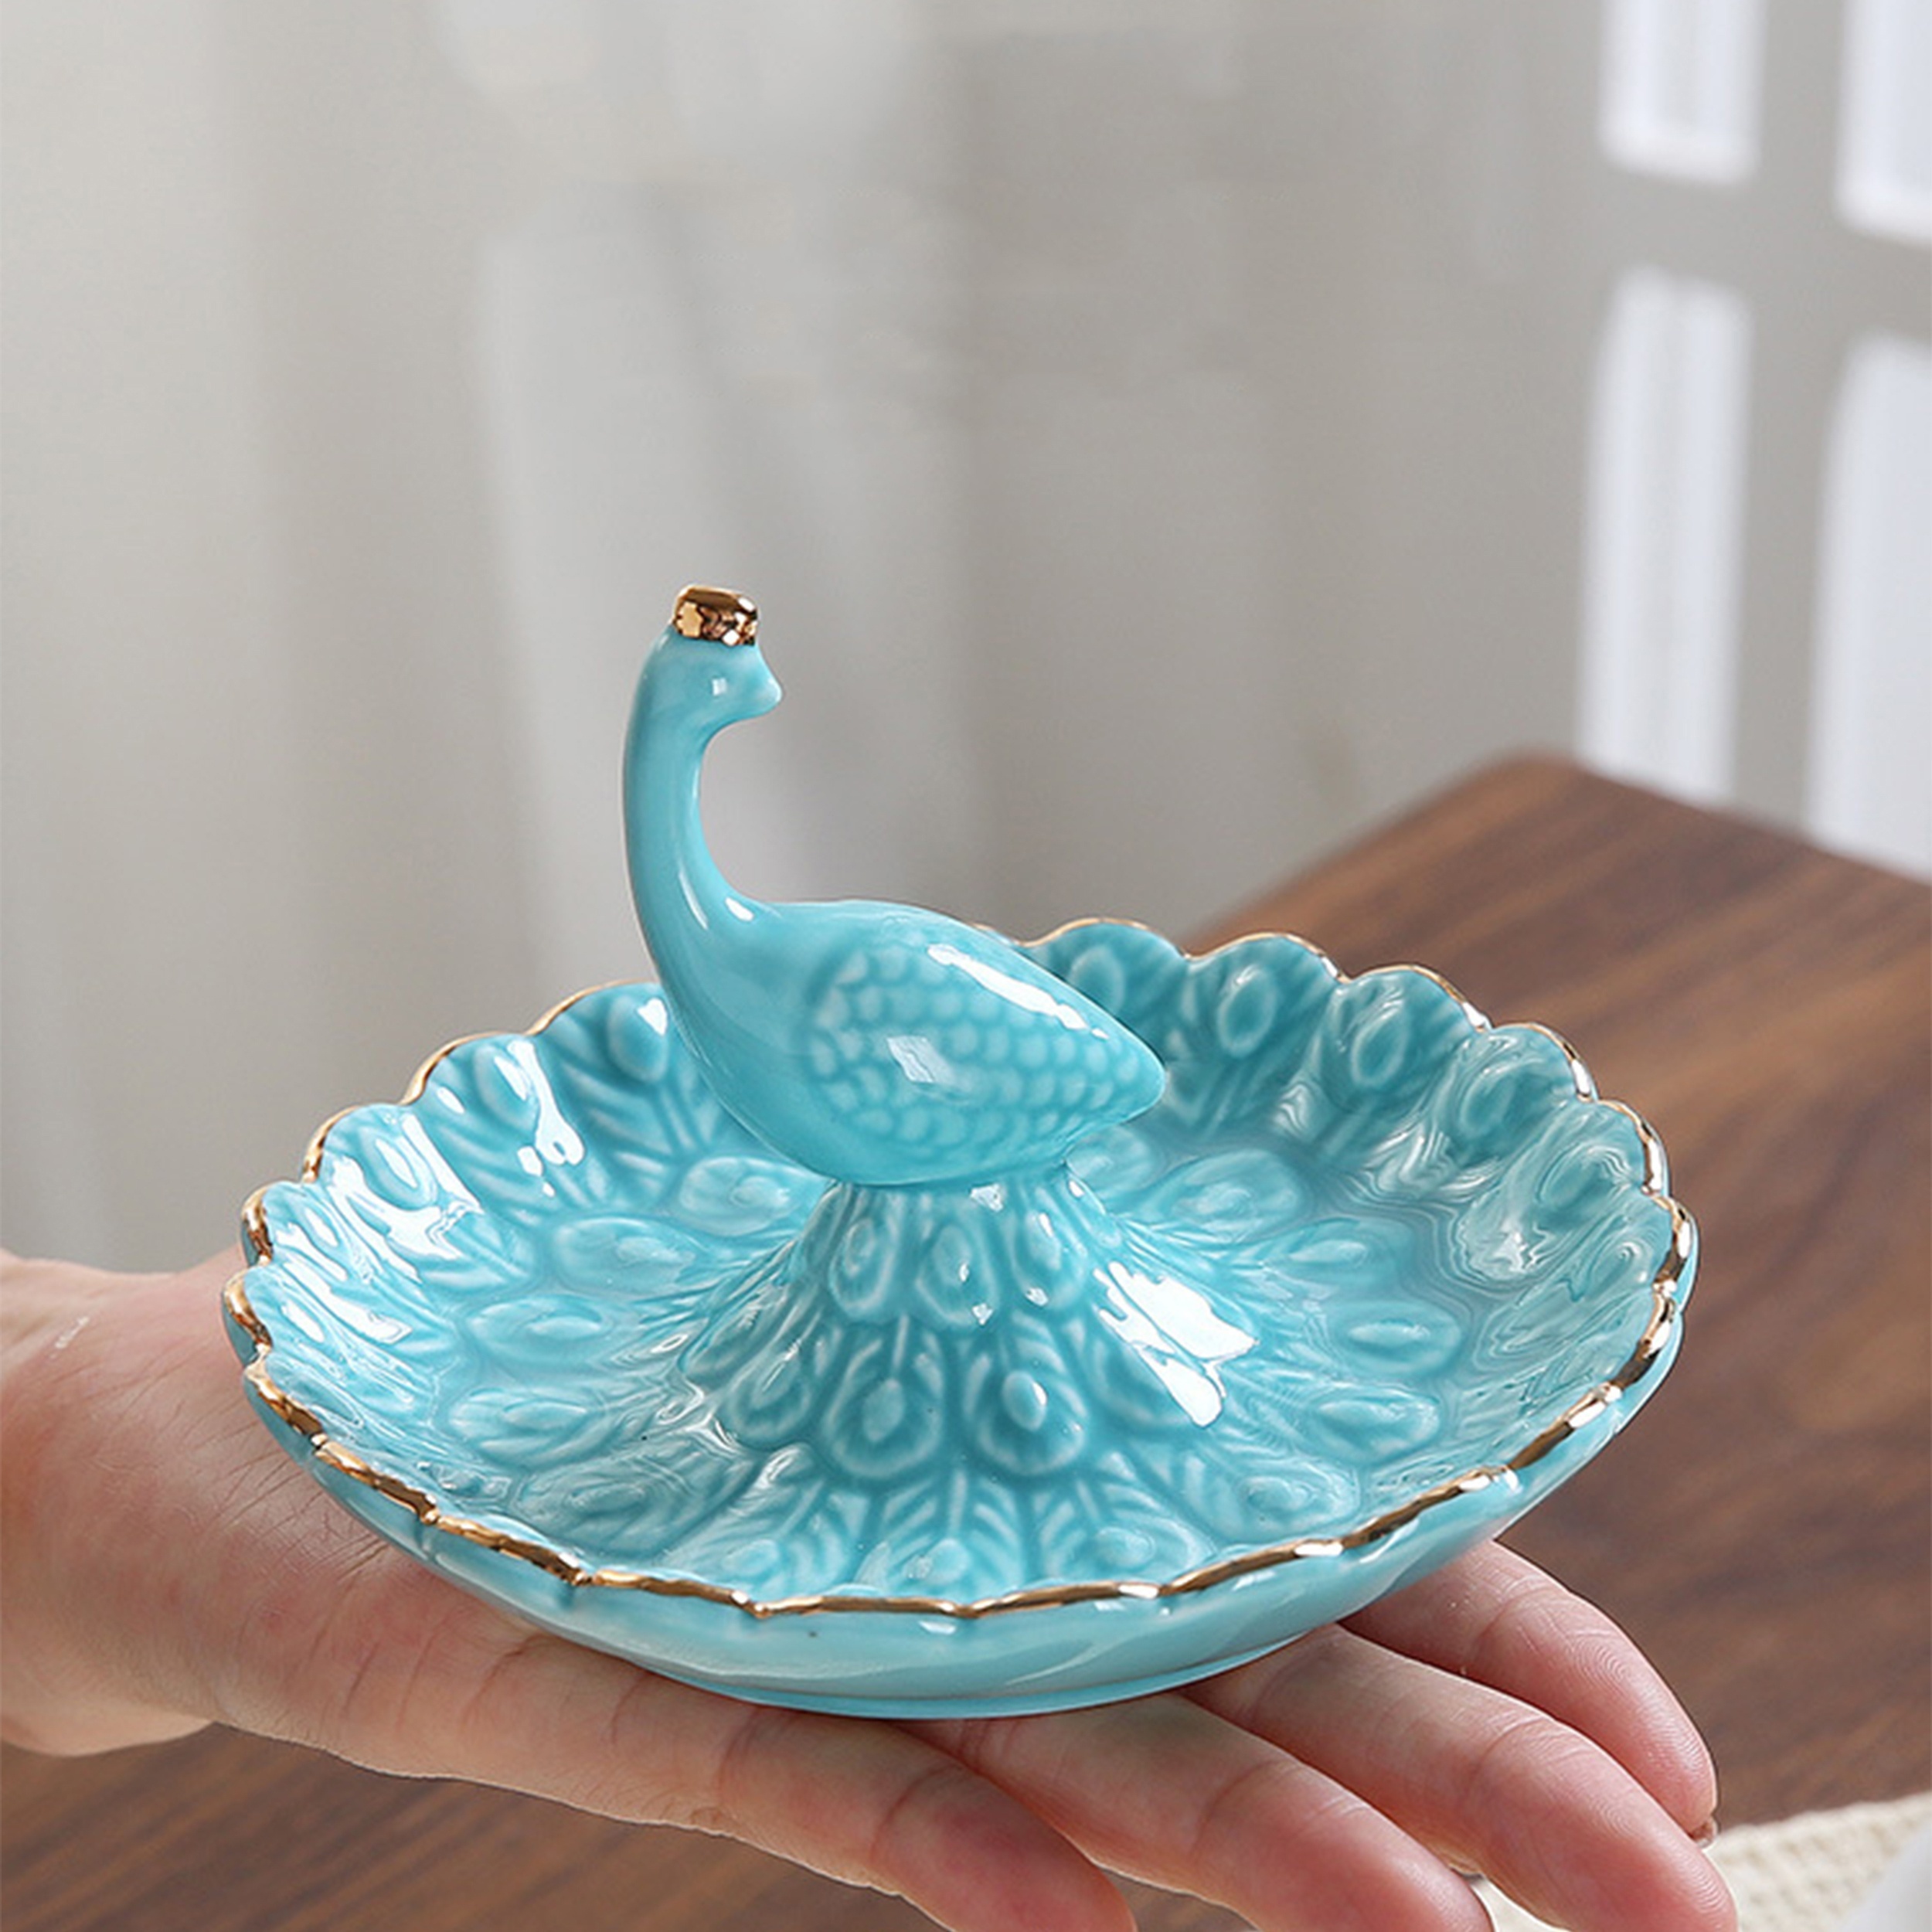 Plato decorativo de cerámica, platos decorativos de porcelana azul y blanca  para exhibir decoraciones de cerámica hechas a mano para colgar en la